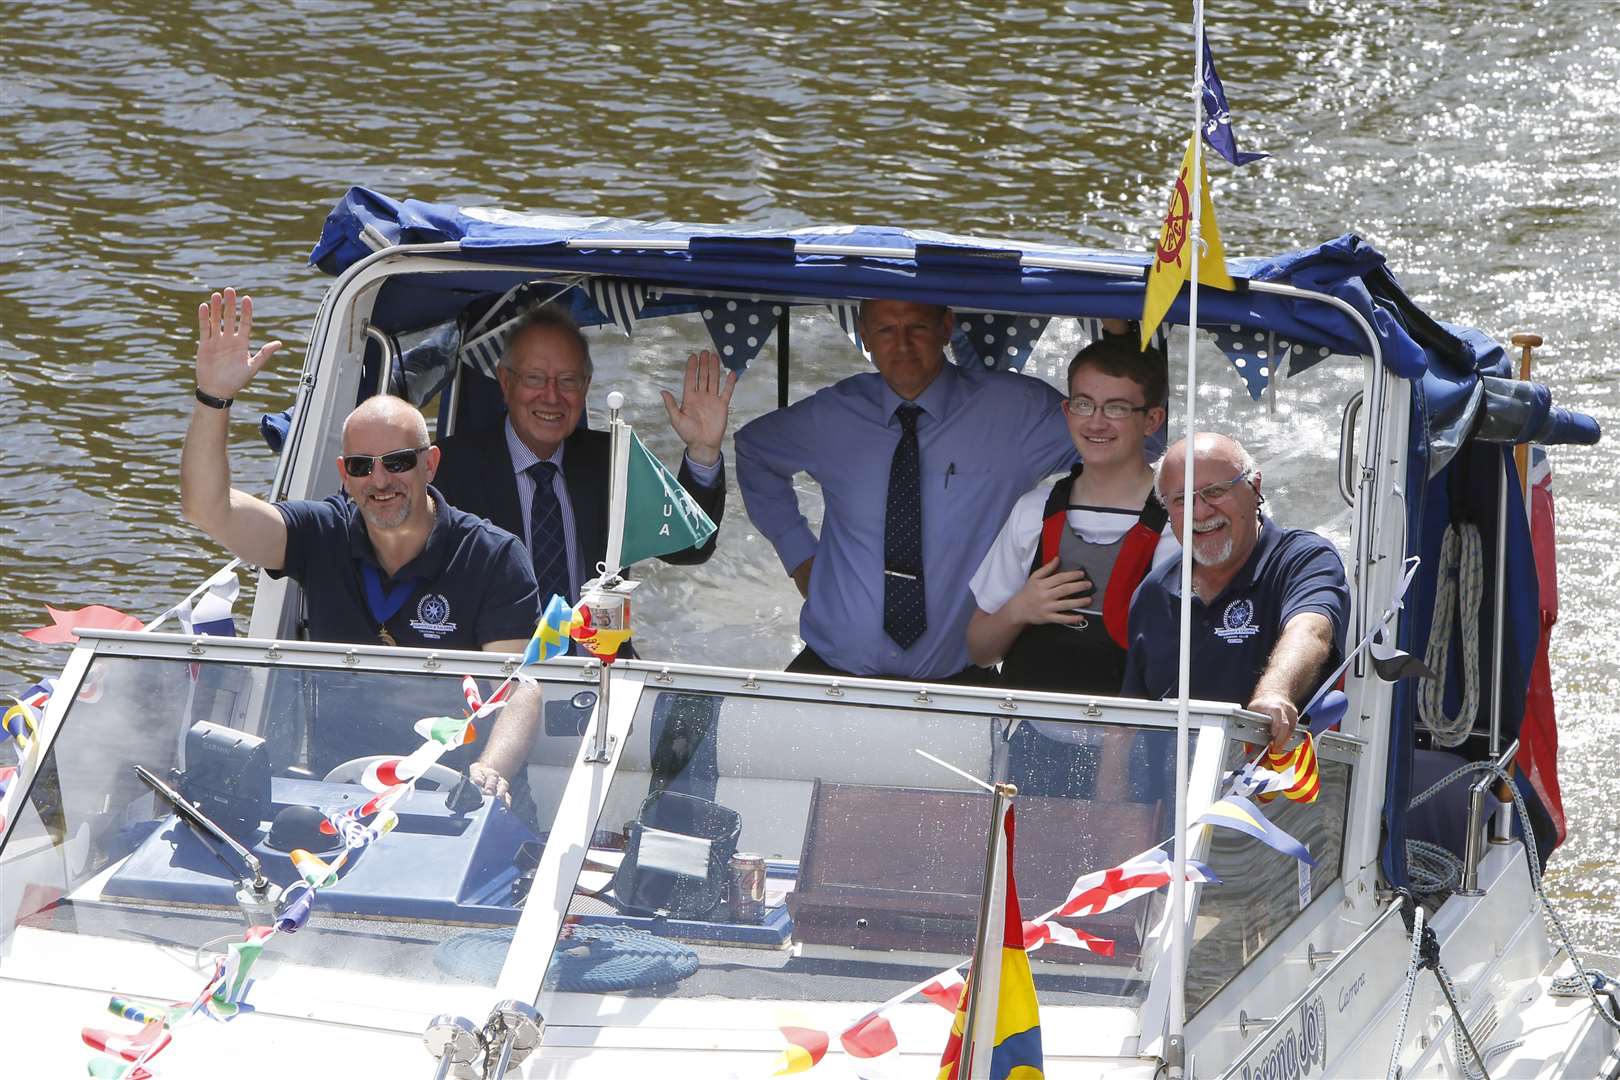 Aboard the Mayor's boat